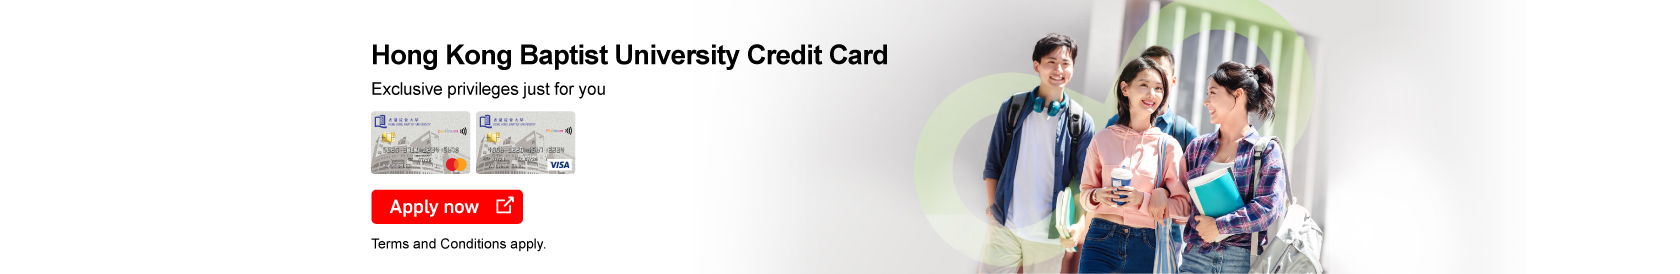 Hong Kong Baptist University Credit Card